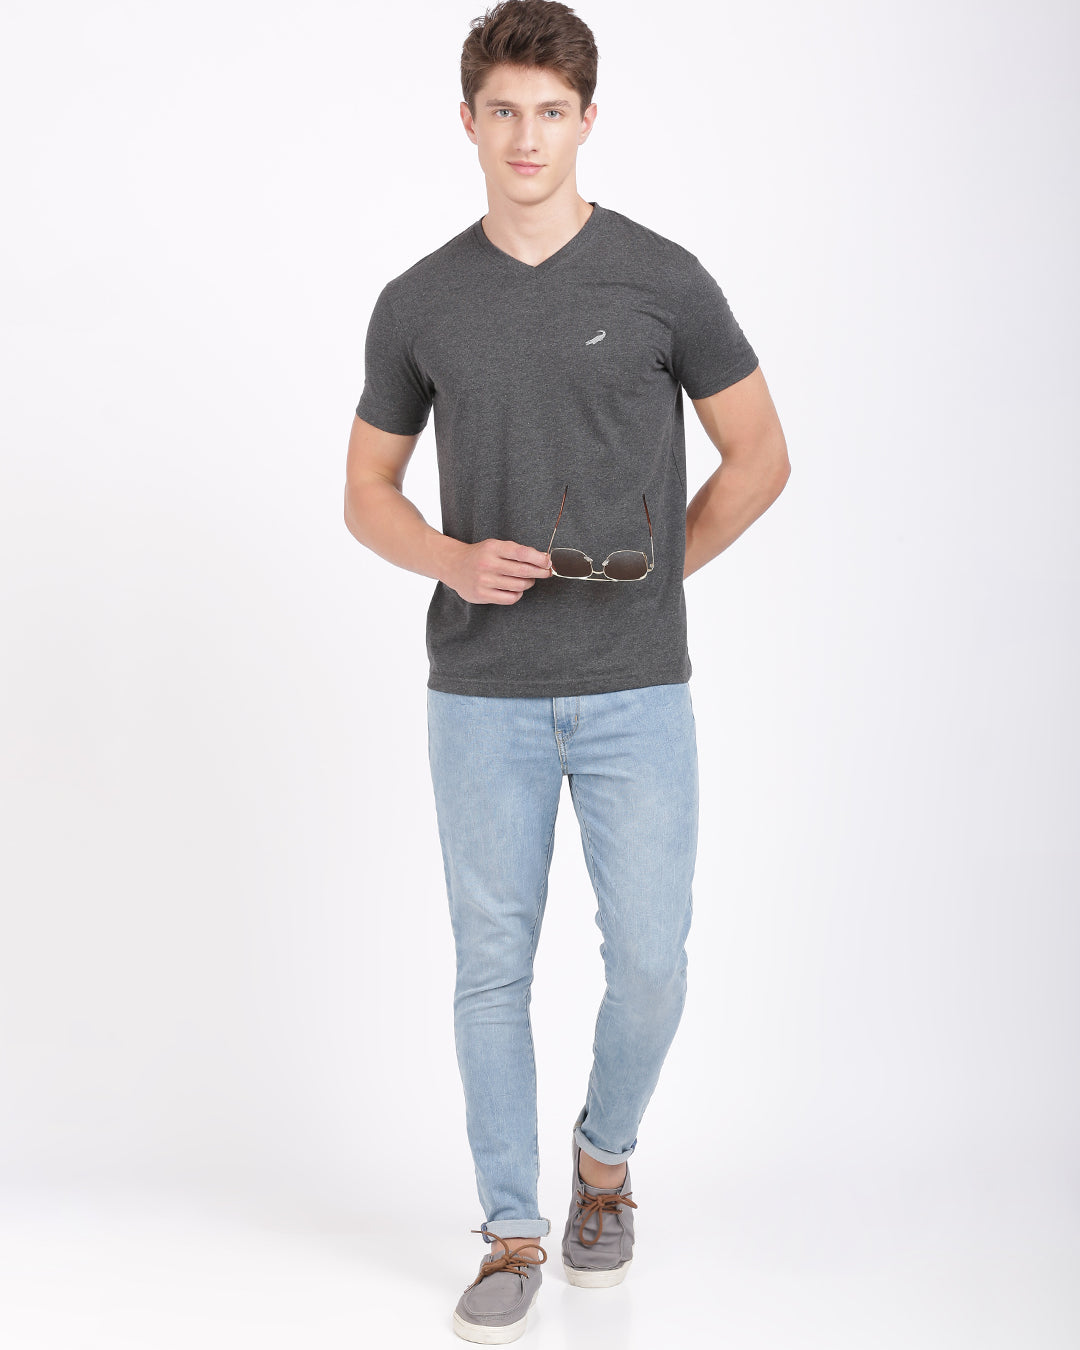 Men's Solid V Neck Half Sleeve Cotton T-Shirt - CHARCOAL MELANGE